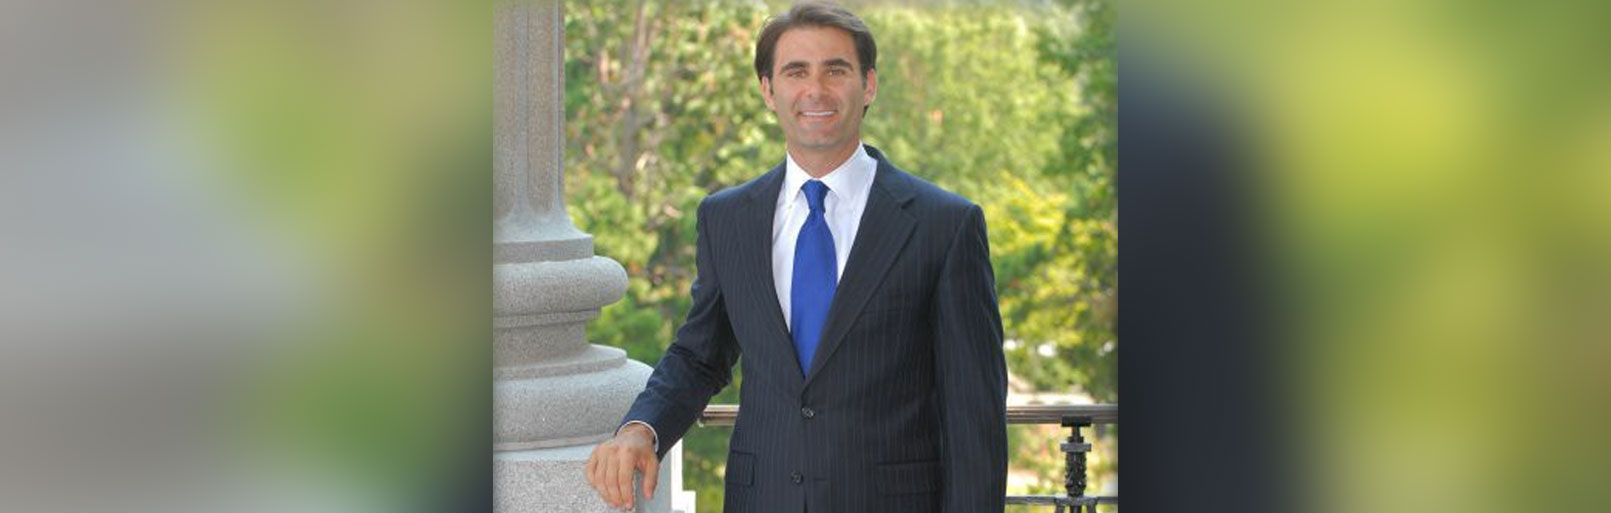 New US Ambassador to Belize, Andre Bauer